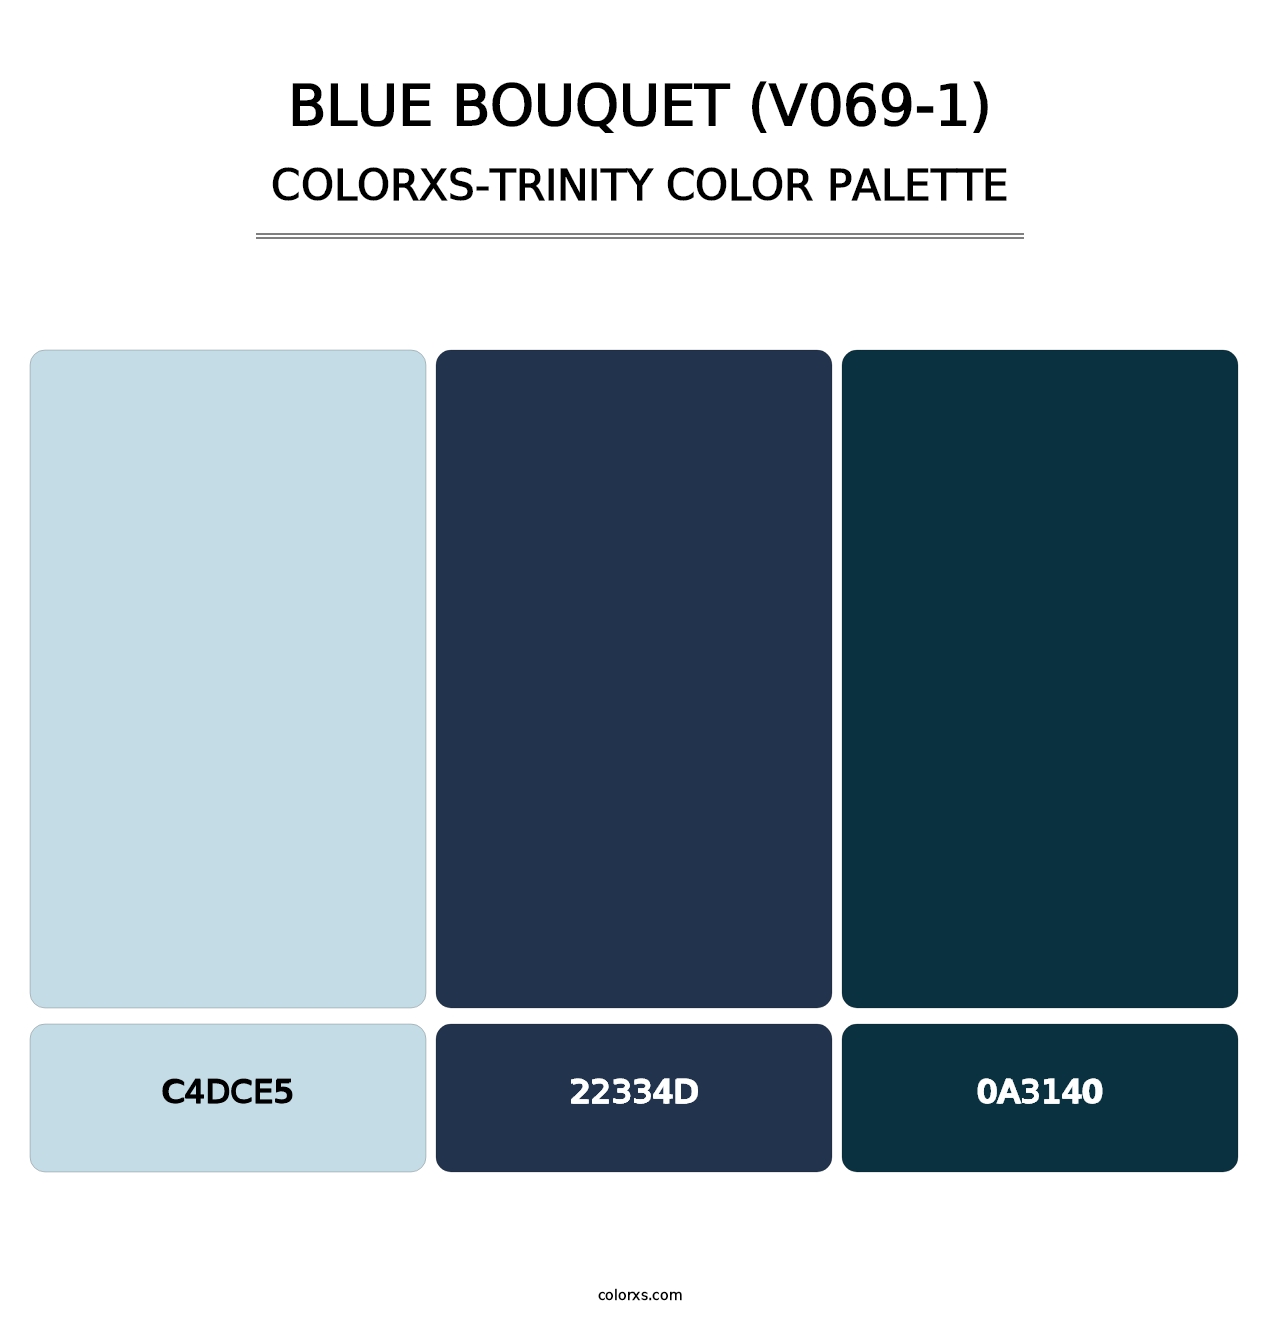 Blue Bouquet (V069-1) - Colorxs Trinity Palette